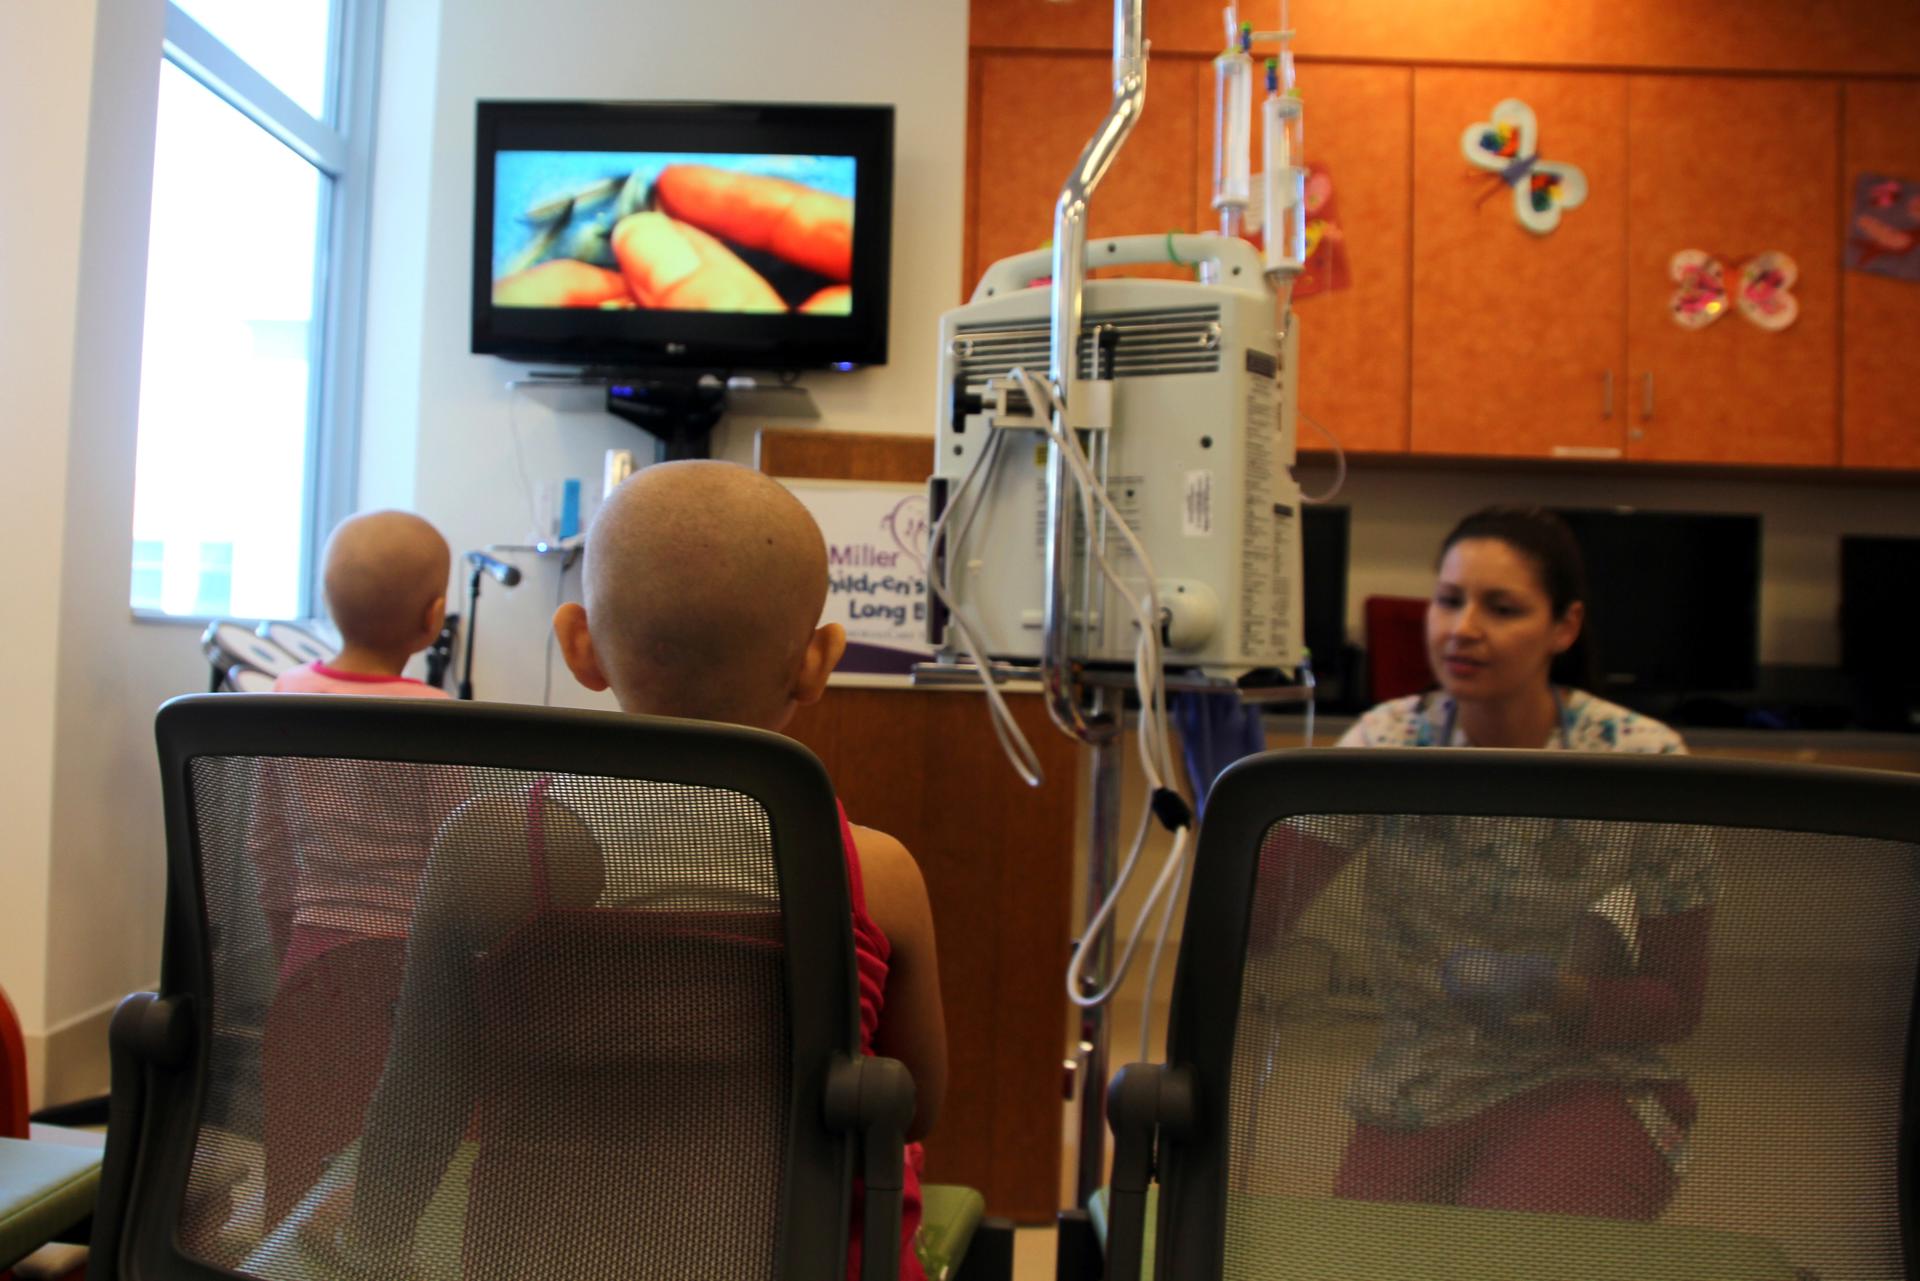 Fotografía de archivo donde se observa a dos pacientes en tratamiento contra la leucemia en el Hospital de Niños Miller en Long Beach, California. EFE/Iván Mejía
